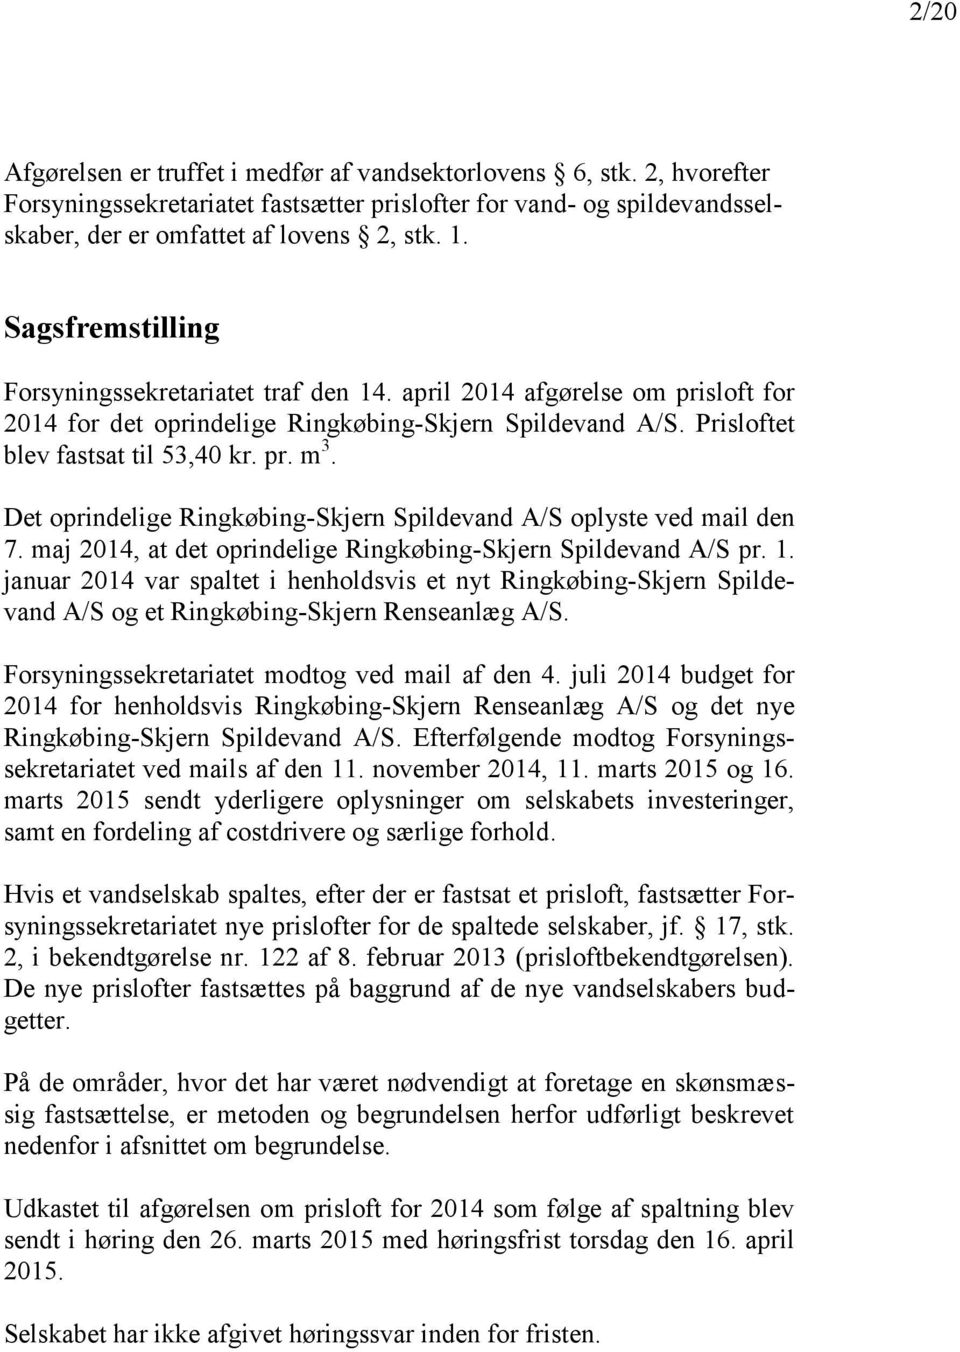 Det oprindelige Ringkøbing-Skjern Spildevand A/S oplyste ved mail den 7. maj 2014, at det oprindelige Ringkøbing-Skjern Spildevand A/S pr. 1.